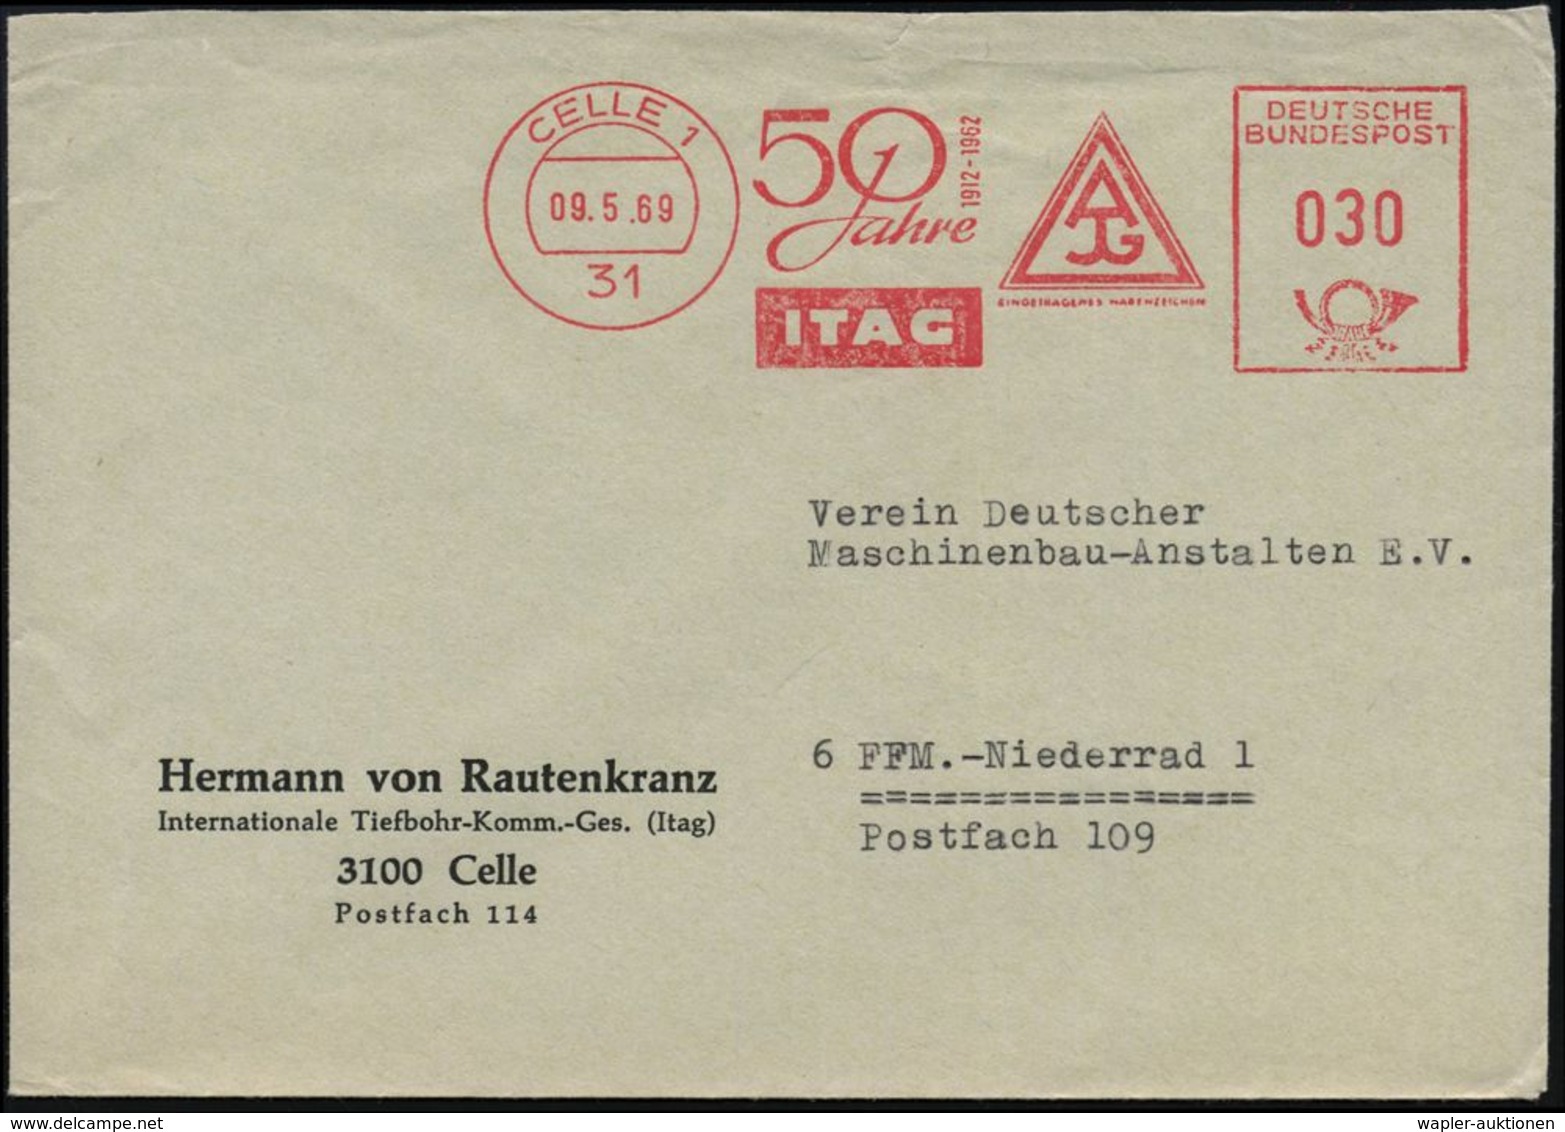 ERDÖL / PROSPEKTIERUNG & GEWINNUNG : 31 CELLE 1/ 50 Jahre/ ITAG 1969 (9.5.) Jubil.-AFS (Firmen-Logo) Auf Firmen-Bf.: Her - Pétrole